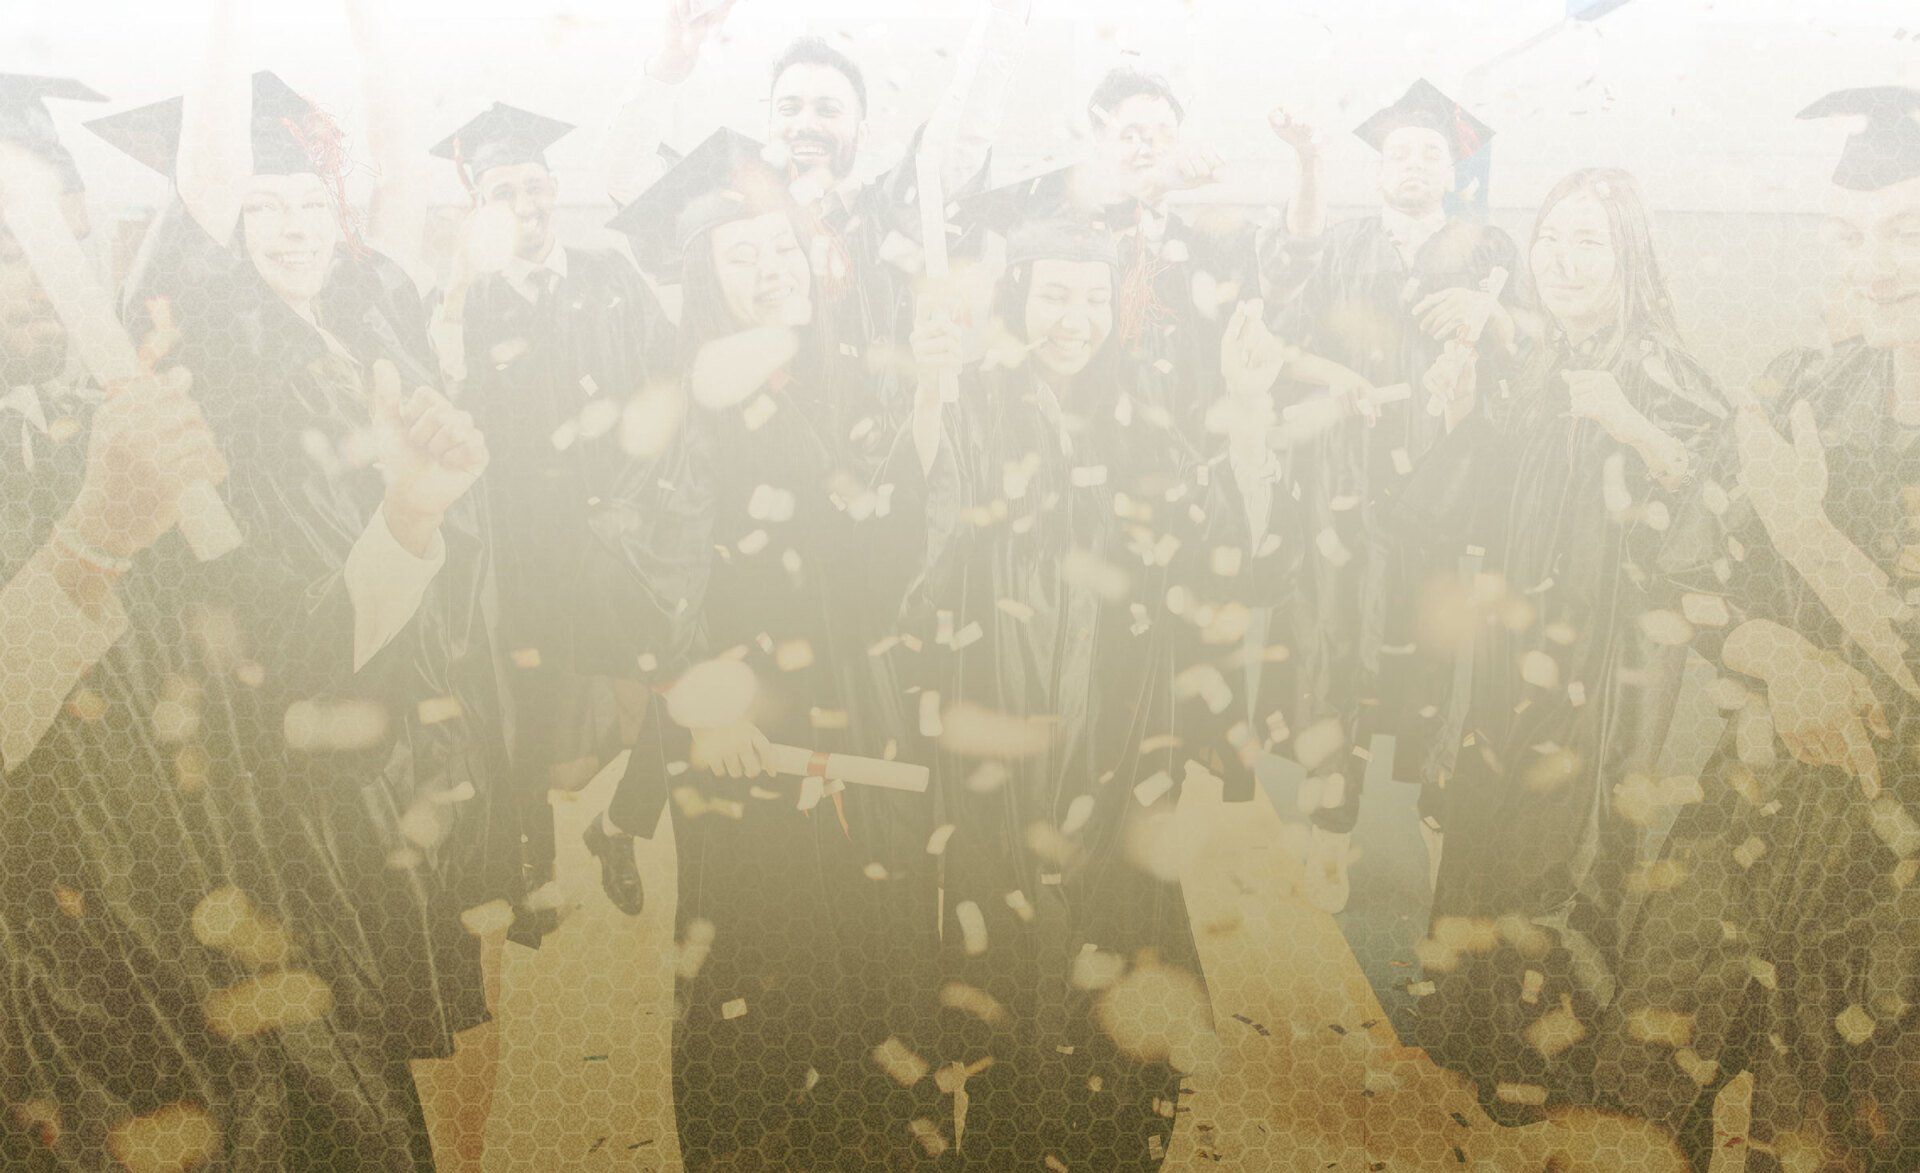 background image of graduates celebrating